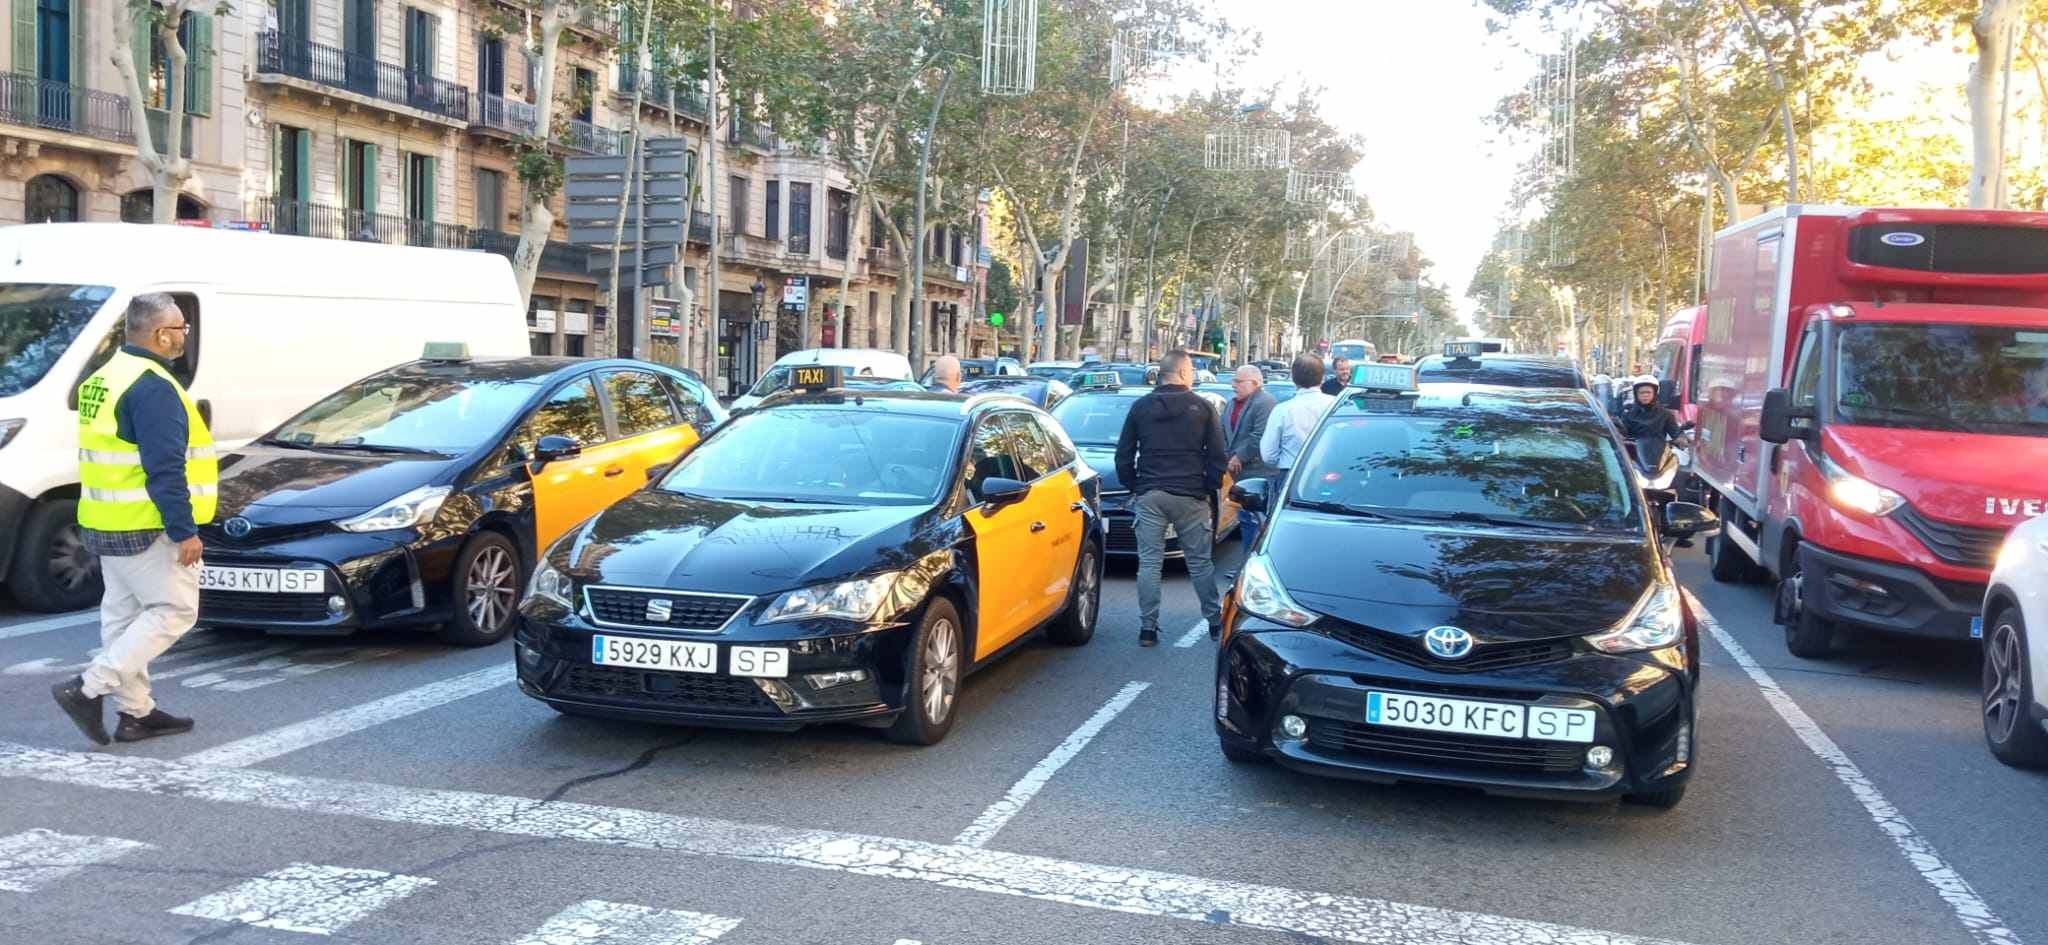 L'Autoritat Catalana de Protecció de Dades avala instal·lar càmeres als taxis per perseguir agressions